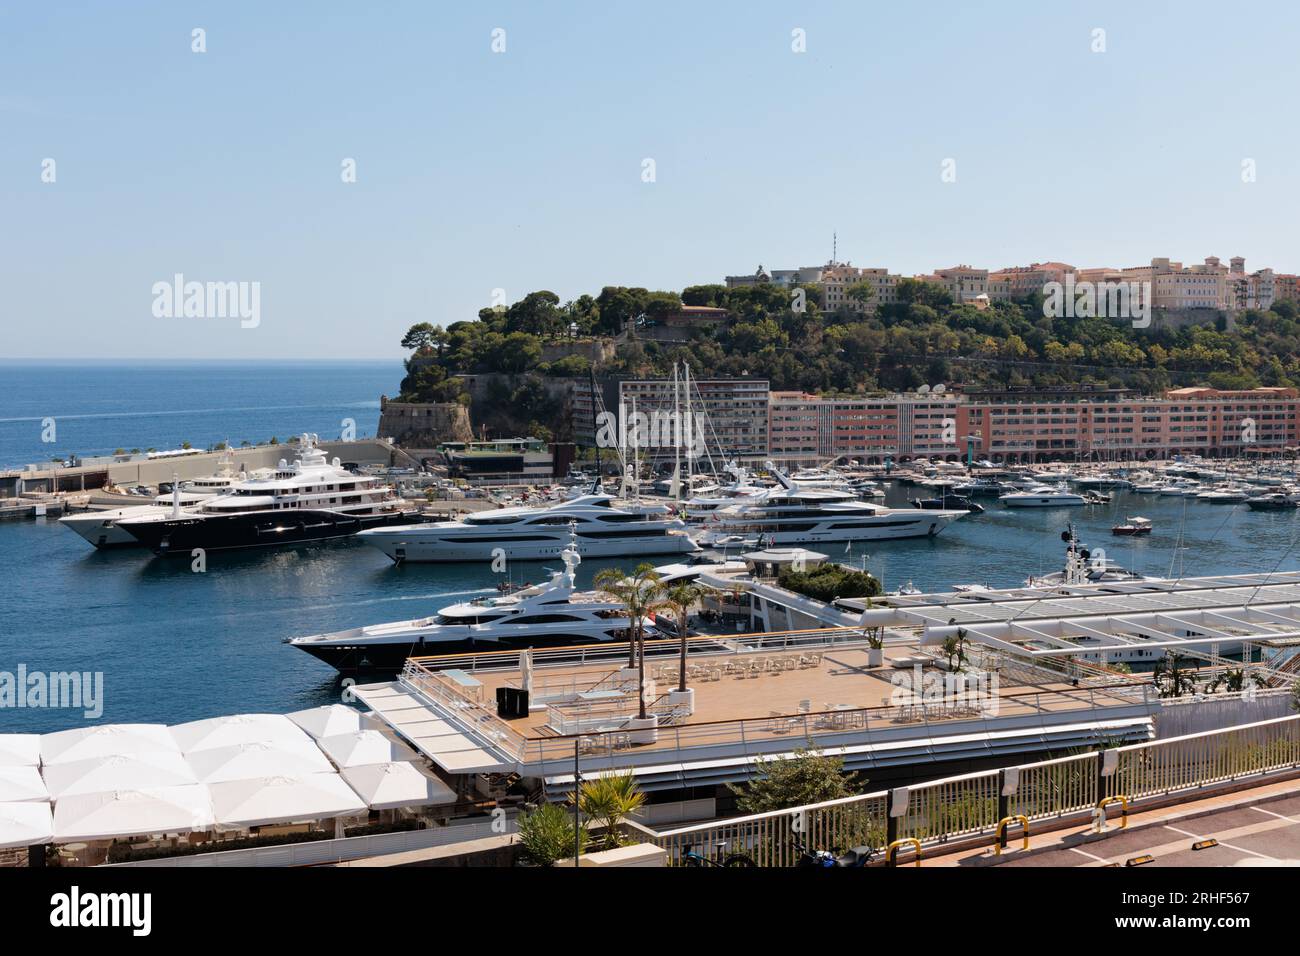 The harbour in Monte Carlo, Monaco Stock Photo